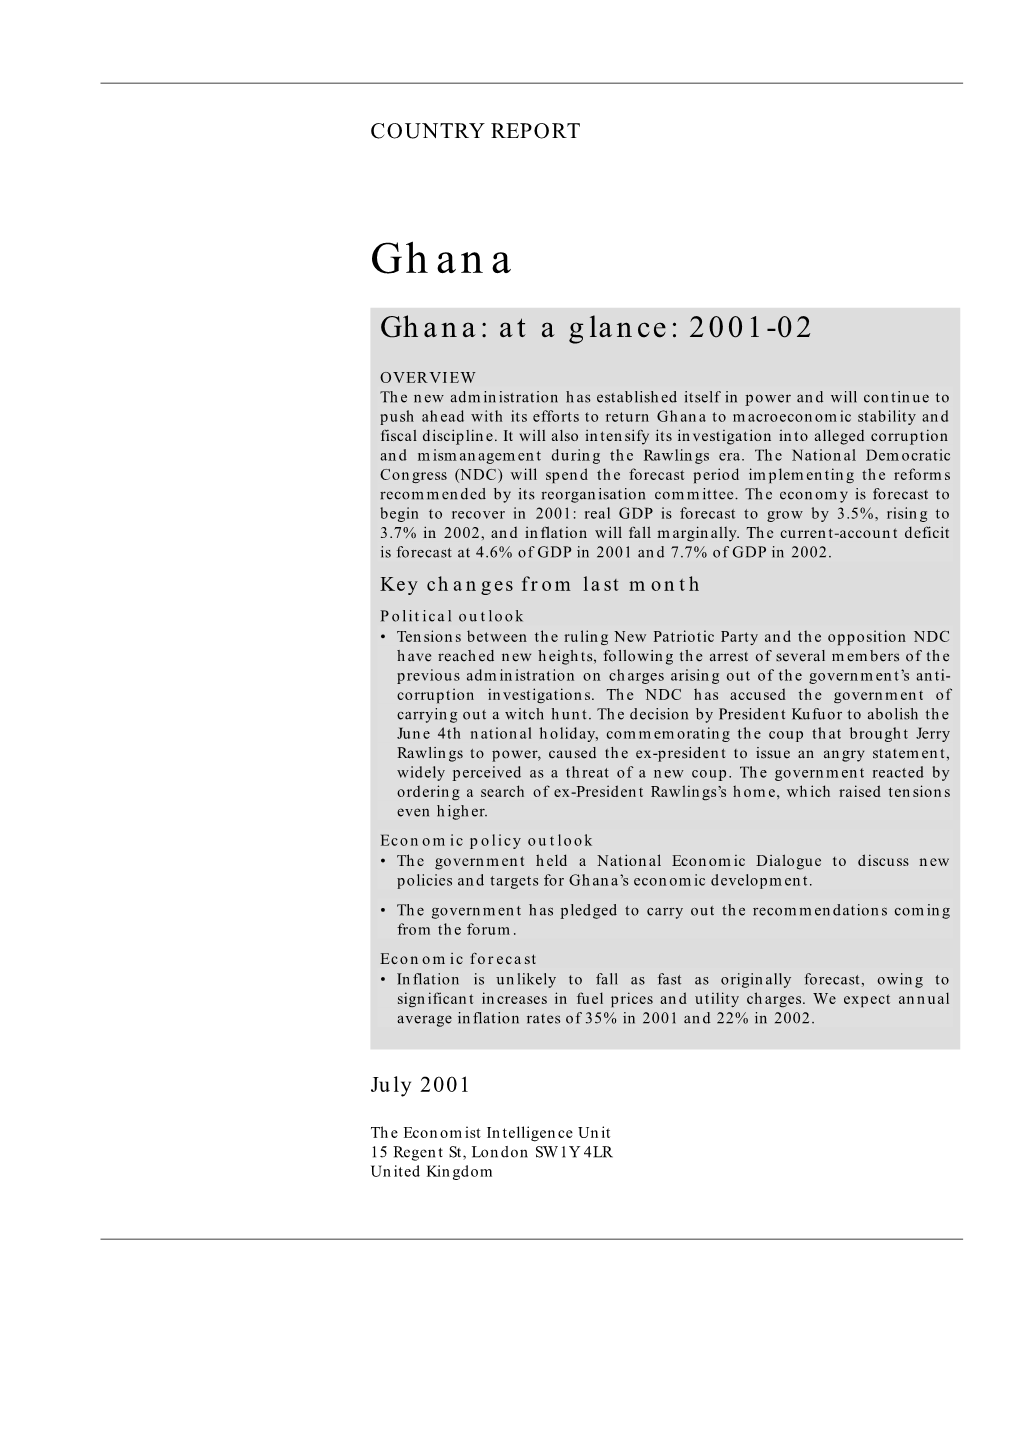 Ghana Ghana: at a Glance: 2001-02